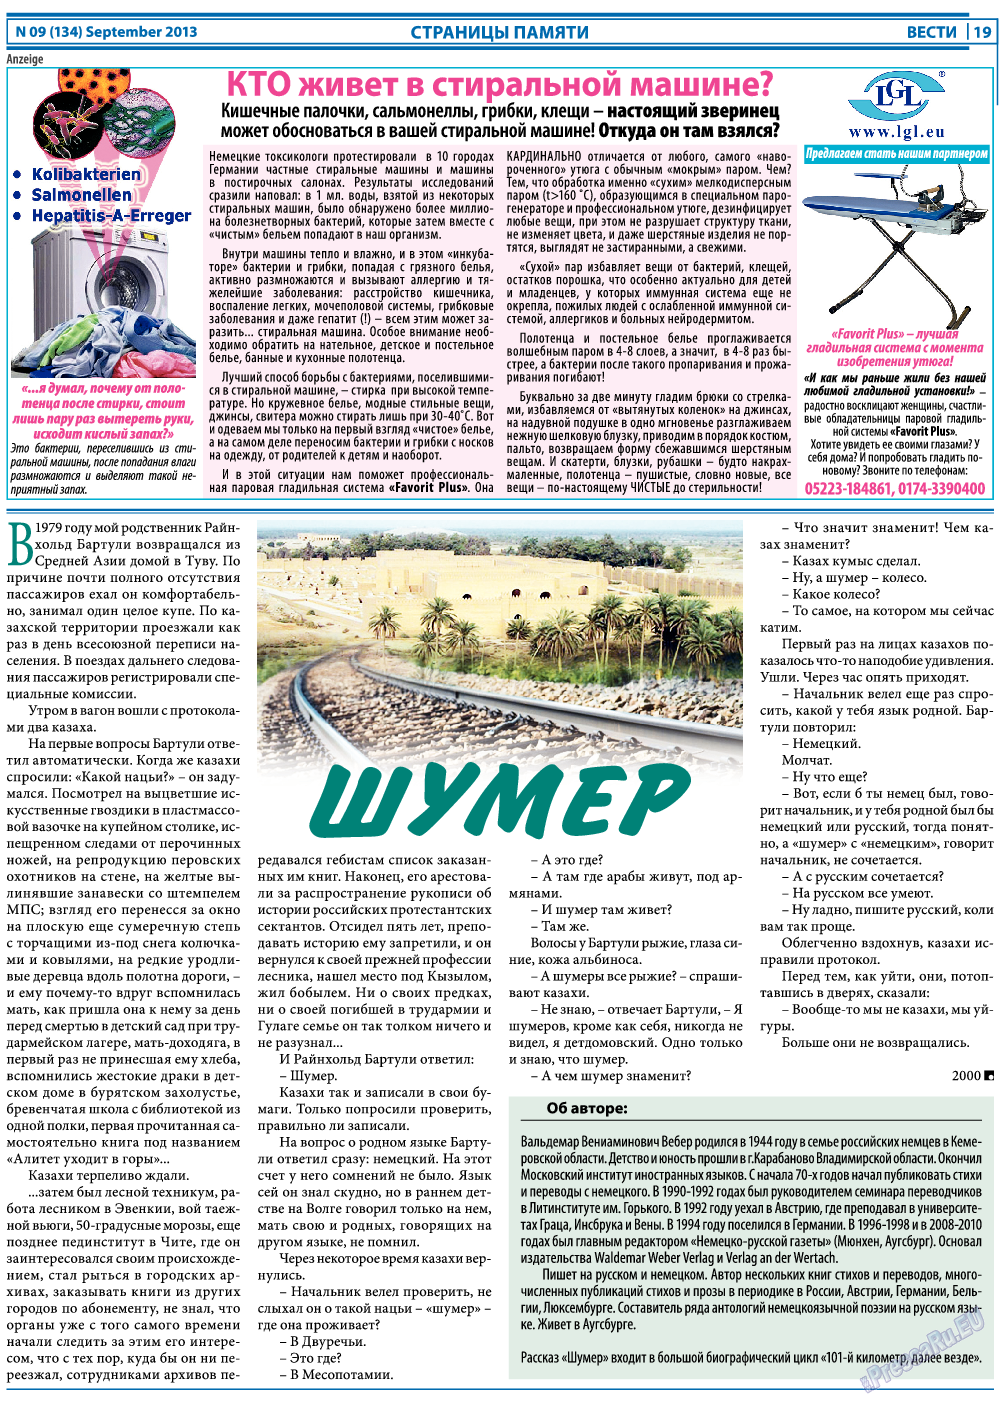 Вести, газета. 2013 №9 стр.19